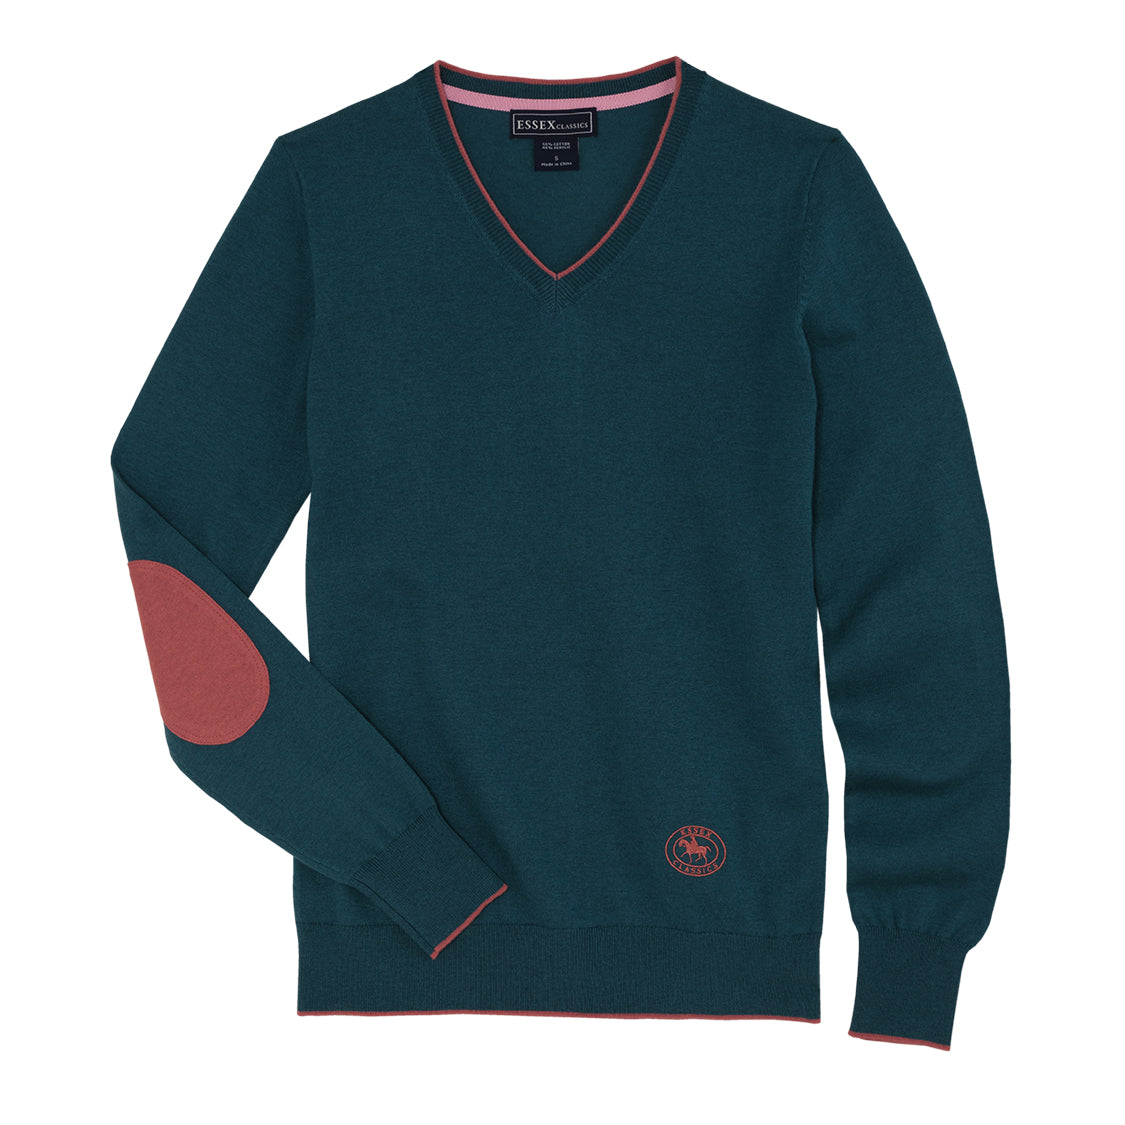 Teal Trey V-Neck Sweater